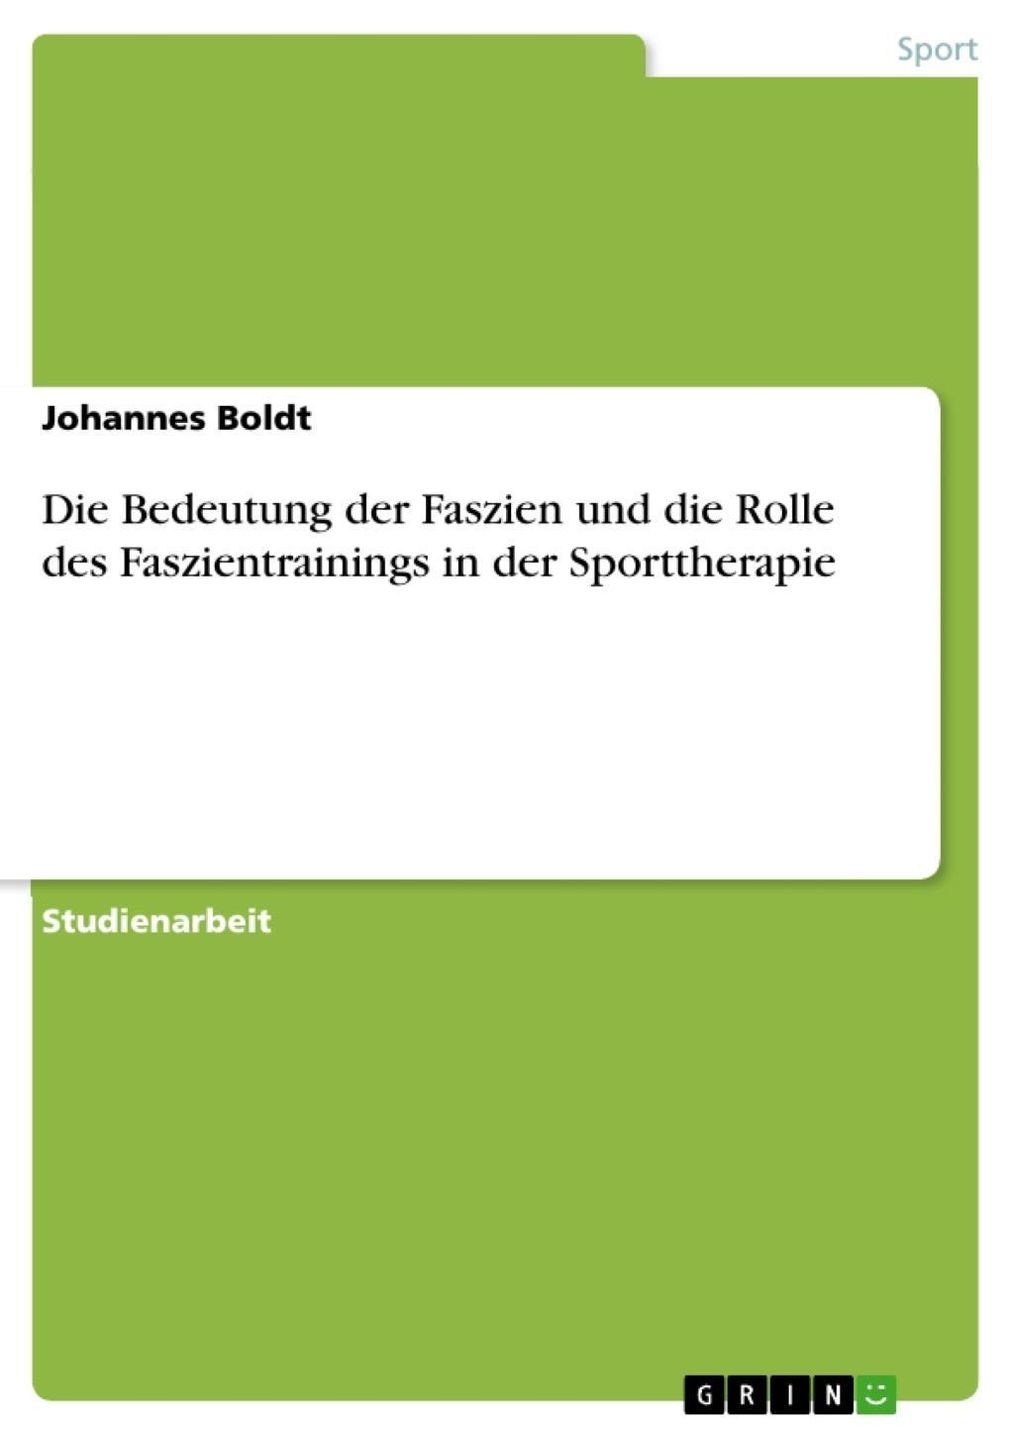 Die Bedeutung der Faszien und die Rolle des Faszientrainings in der  Sporttherapie eBook v. Johannes Boldt | Weltbild